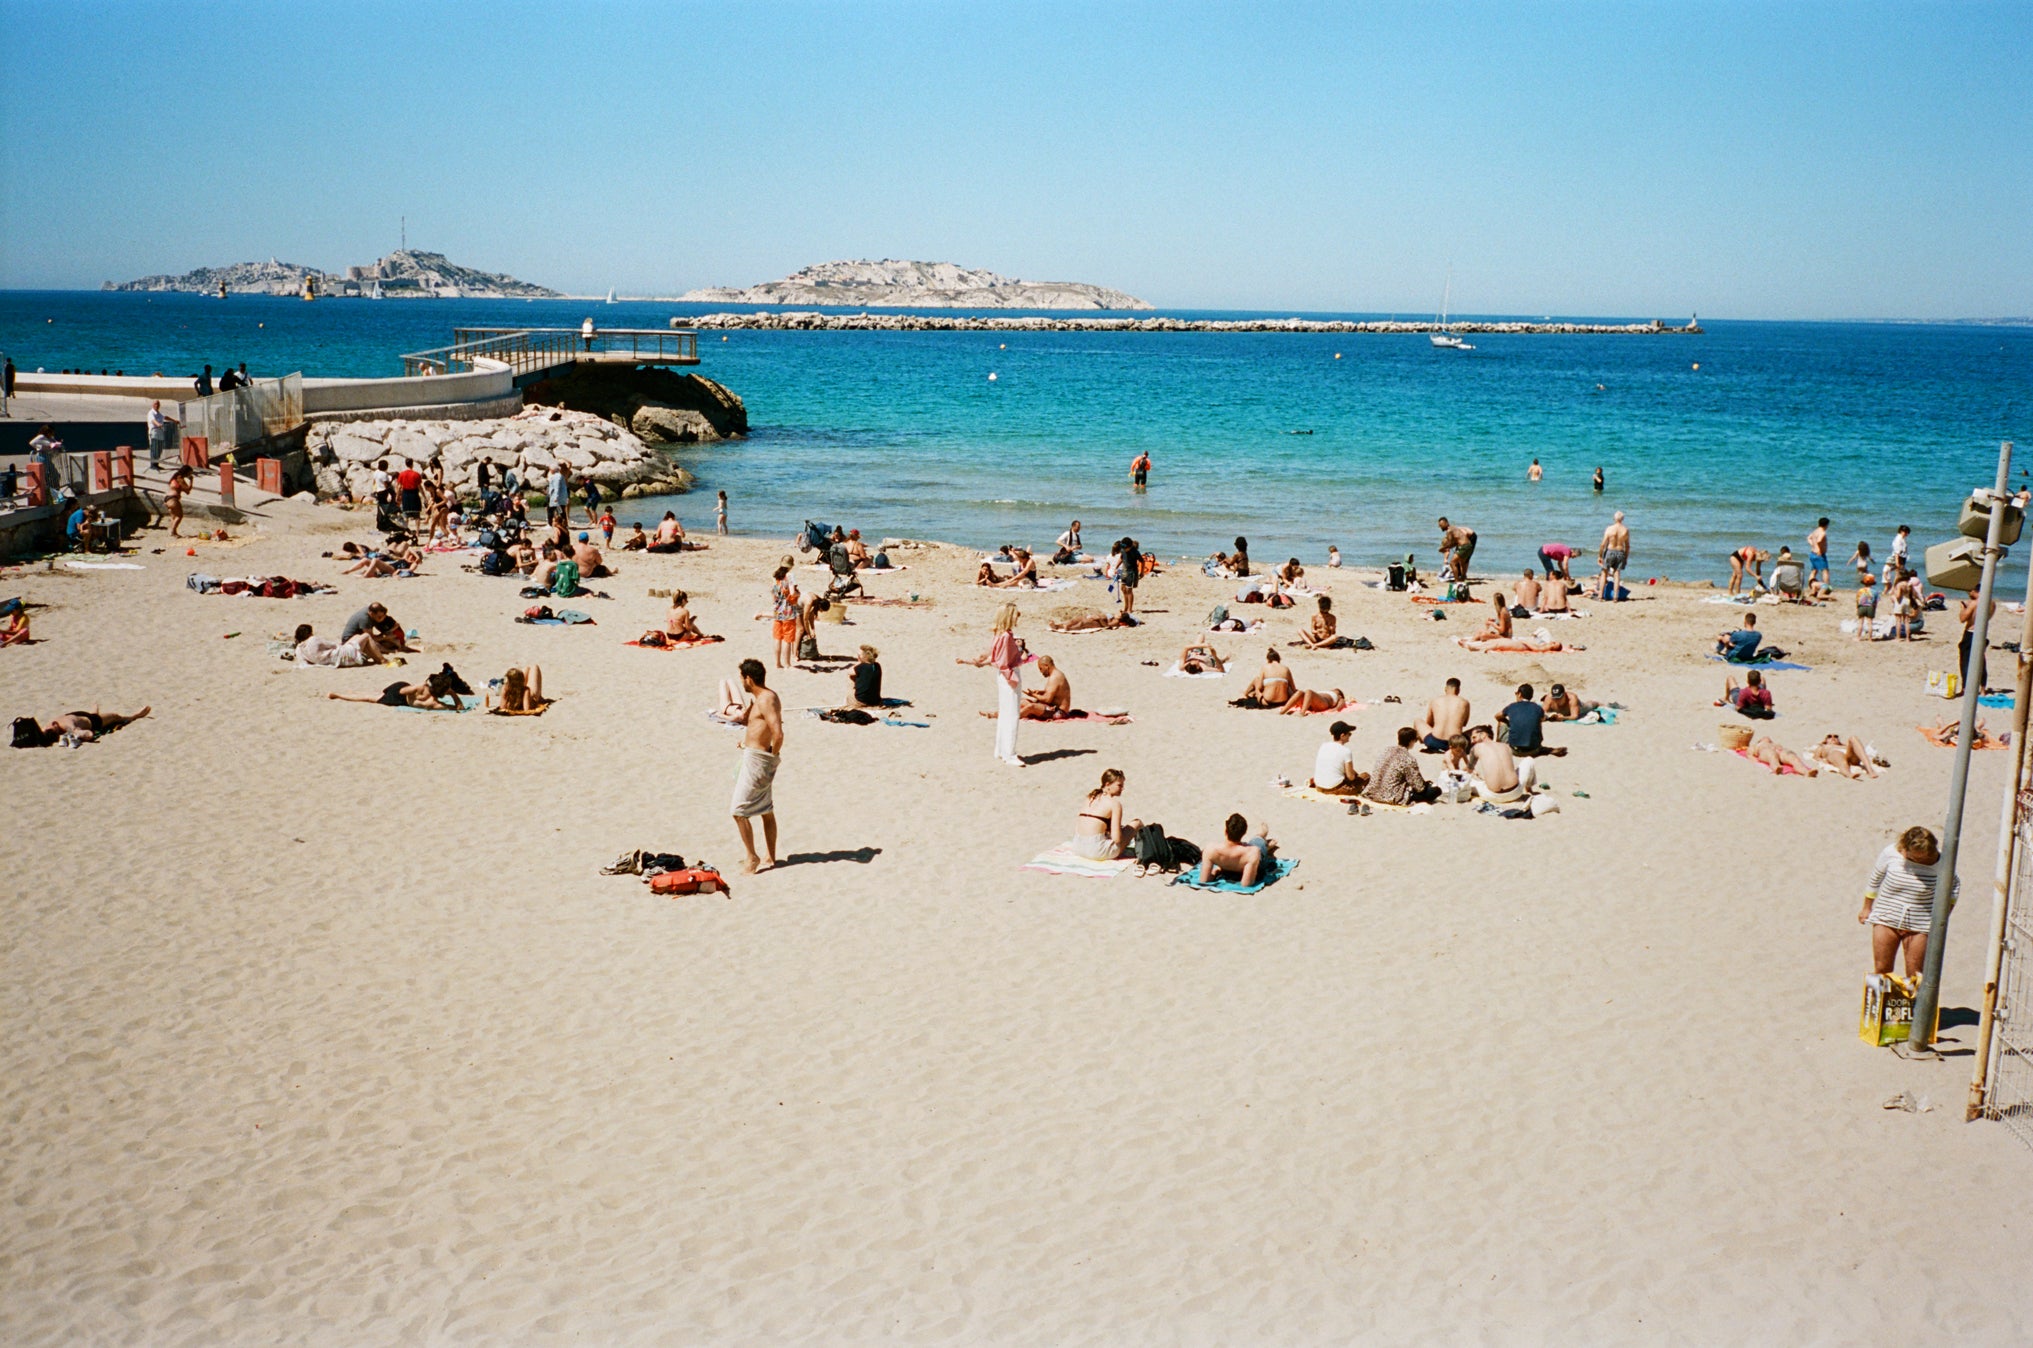 The beach of Marseille.